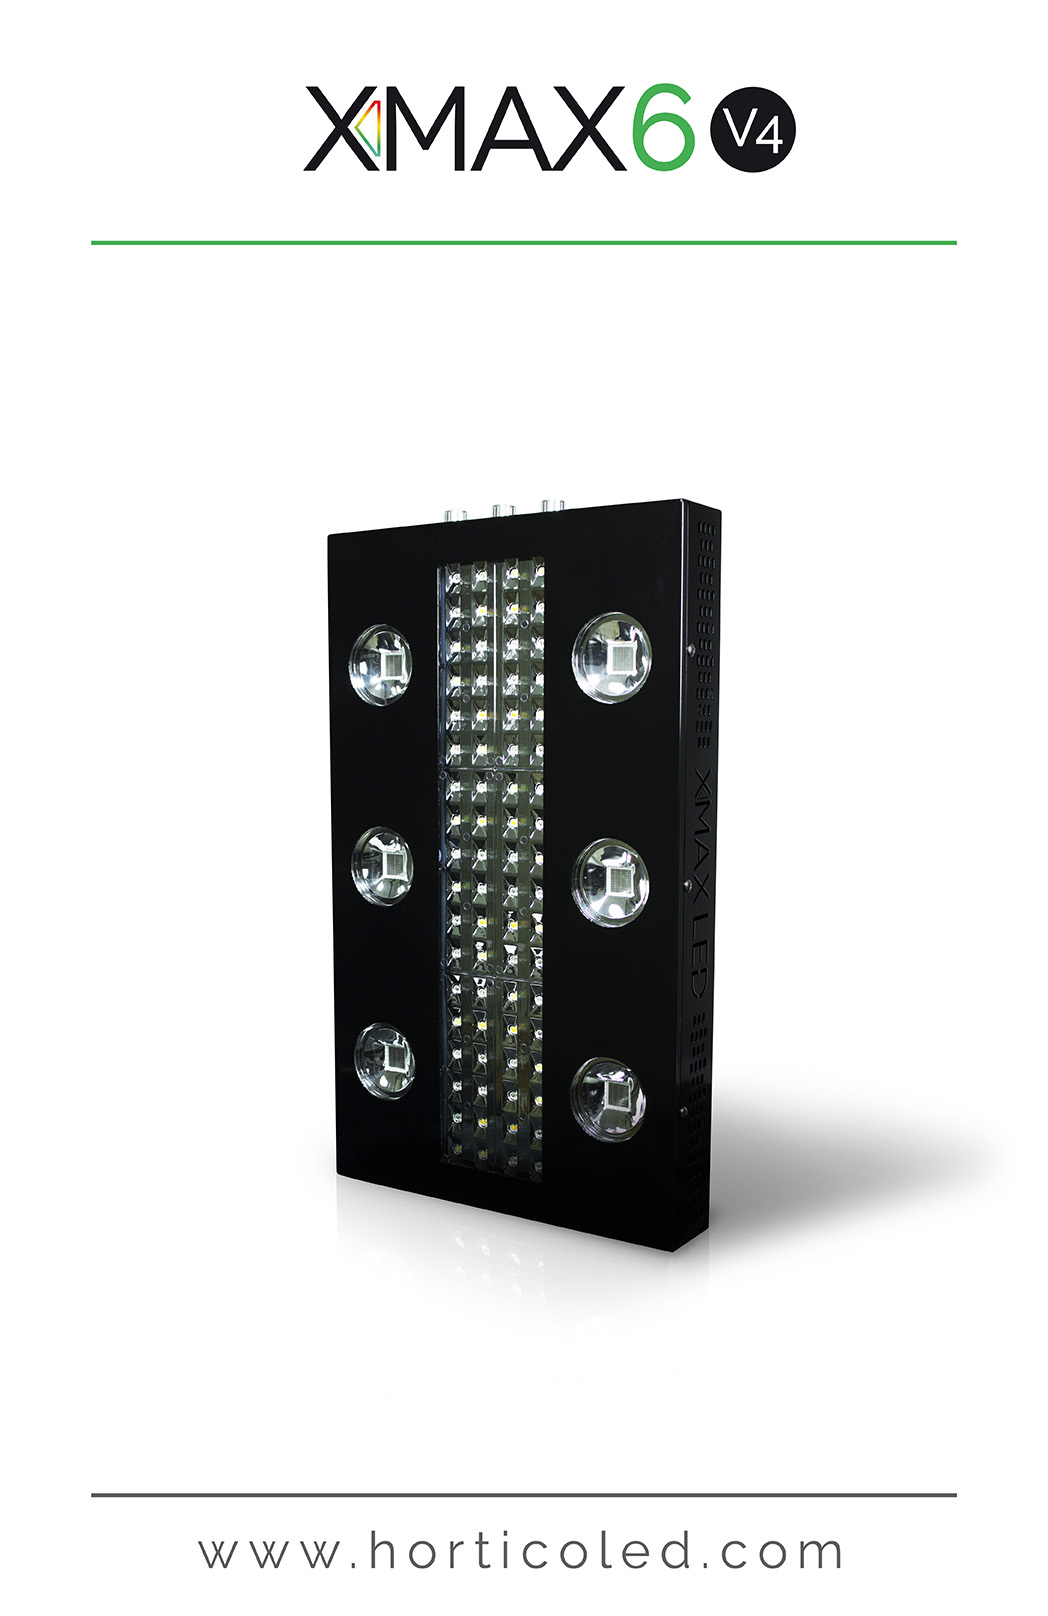 LED Horticole XMAX 6 V4 Horticoled